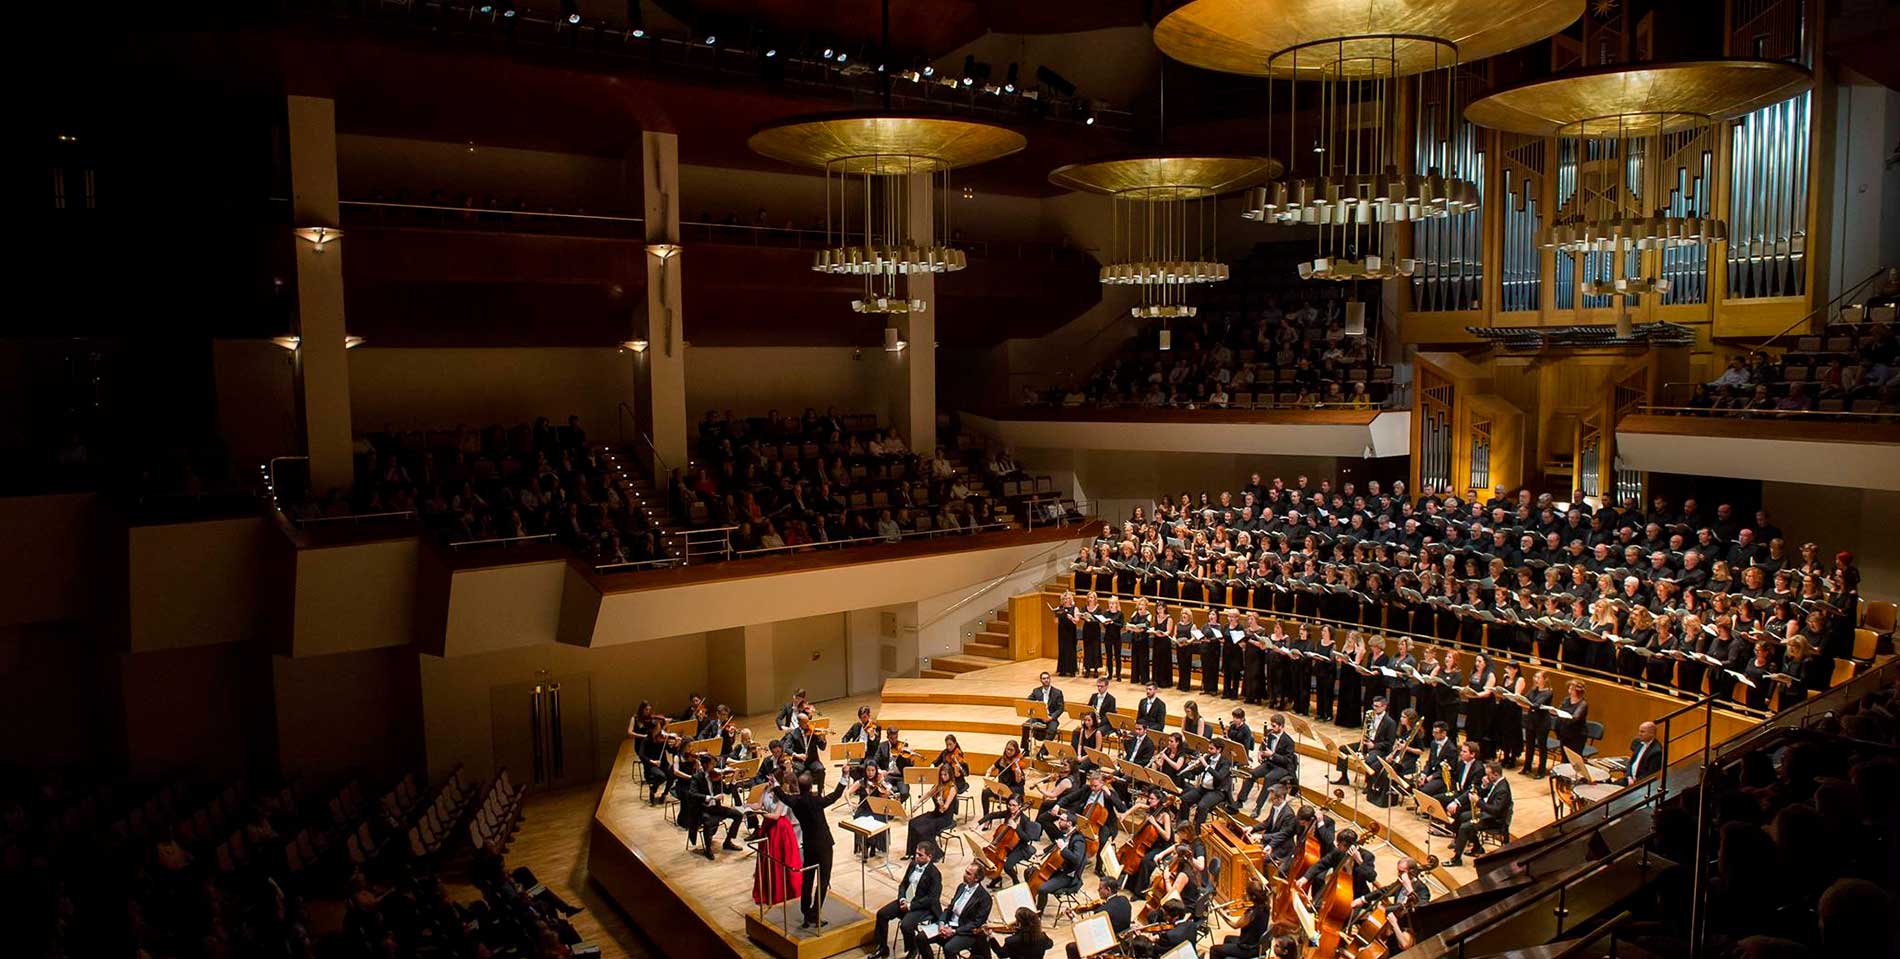 La música de Brahms y Beethoven conquista Madrid